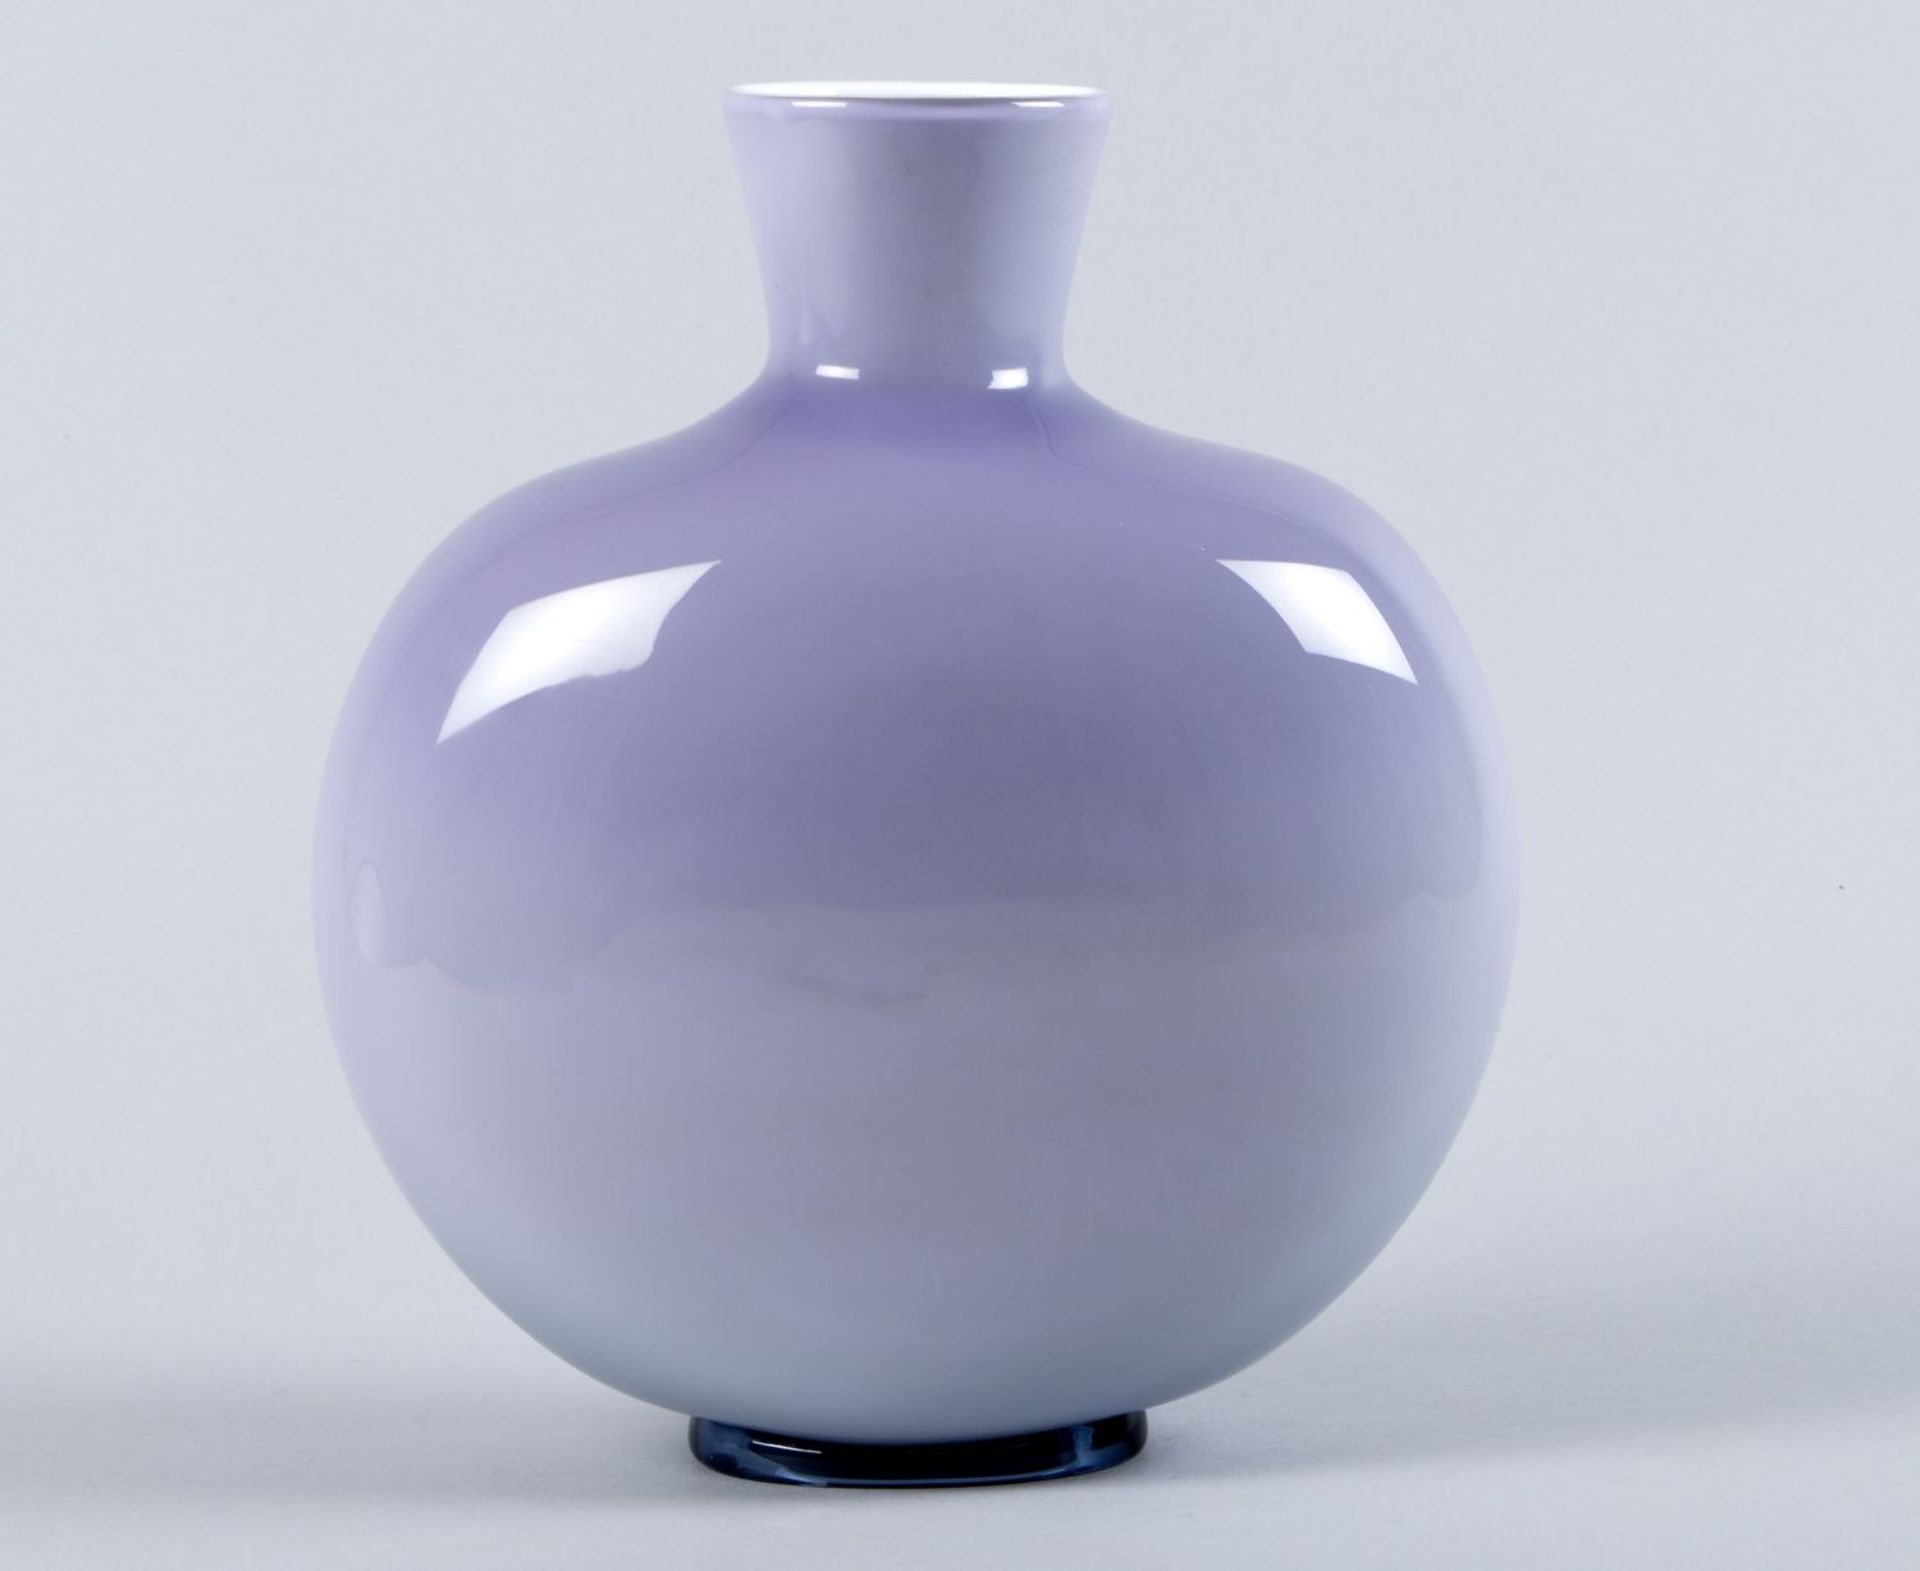 Murano-VaseFarbloses Glas, violett und weiß opak unterfangen. Im Boden bez. "venini italia 89".